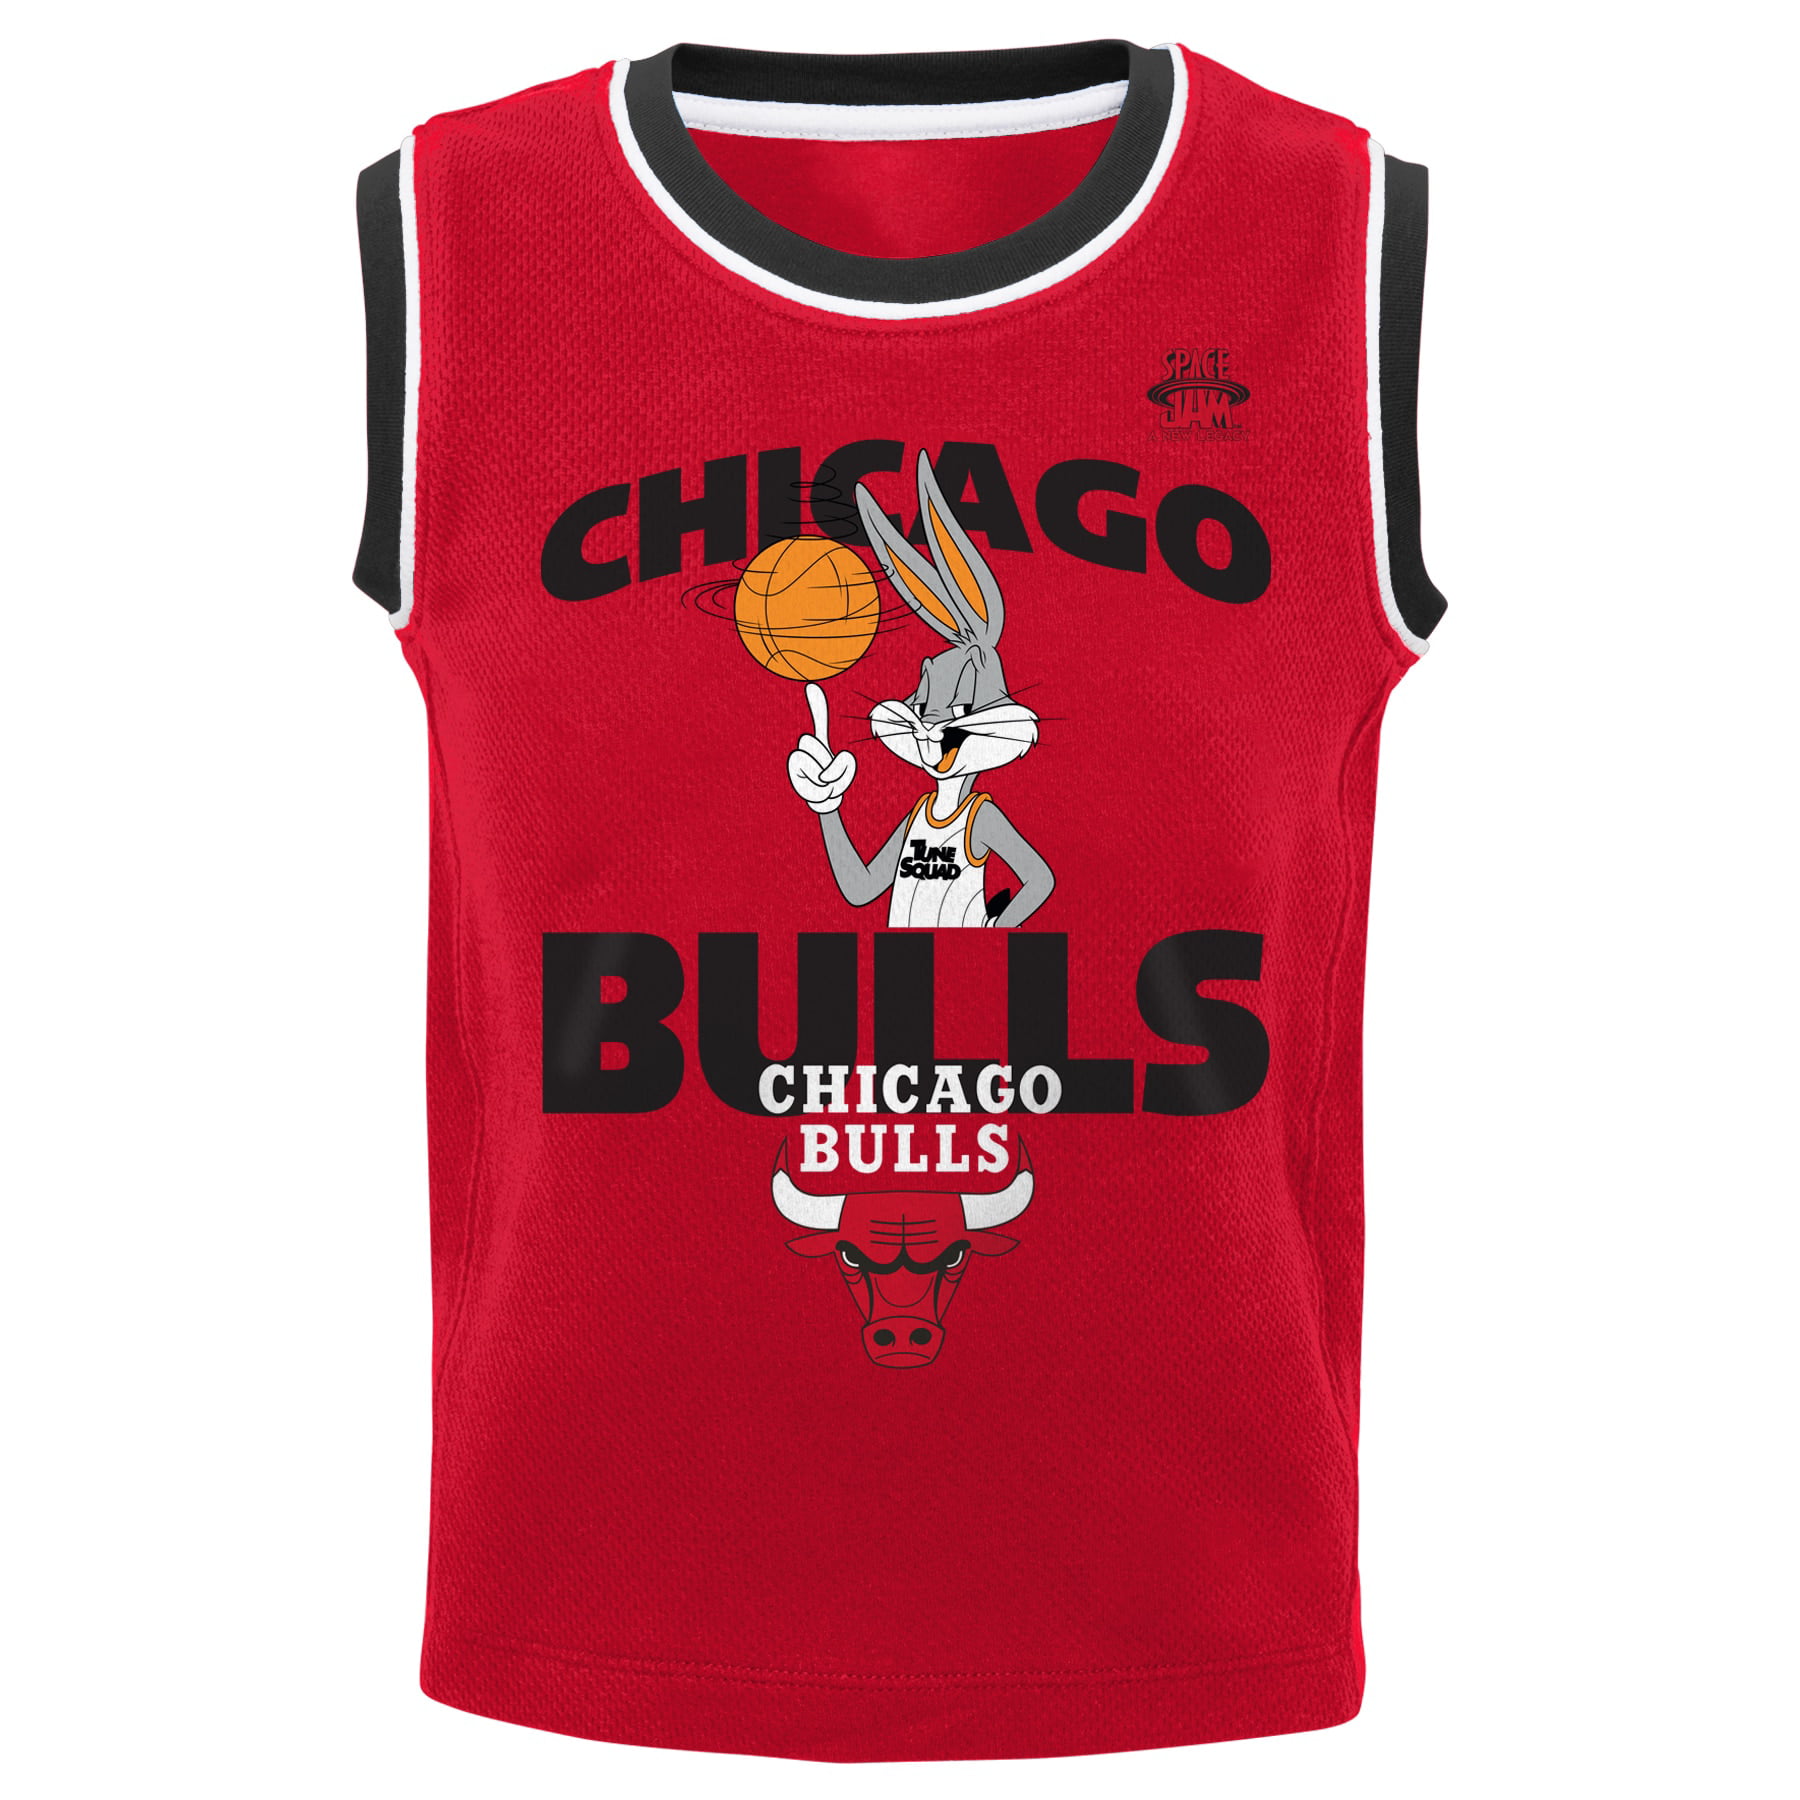 OuterStuff Chicago Bulls Boys Toddler Shirt Shorts 2 Piece Set 